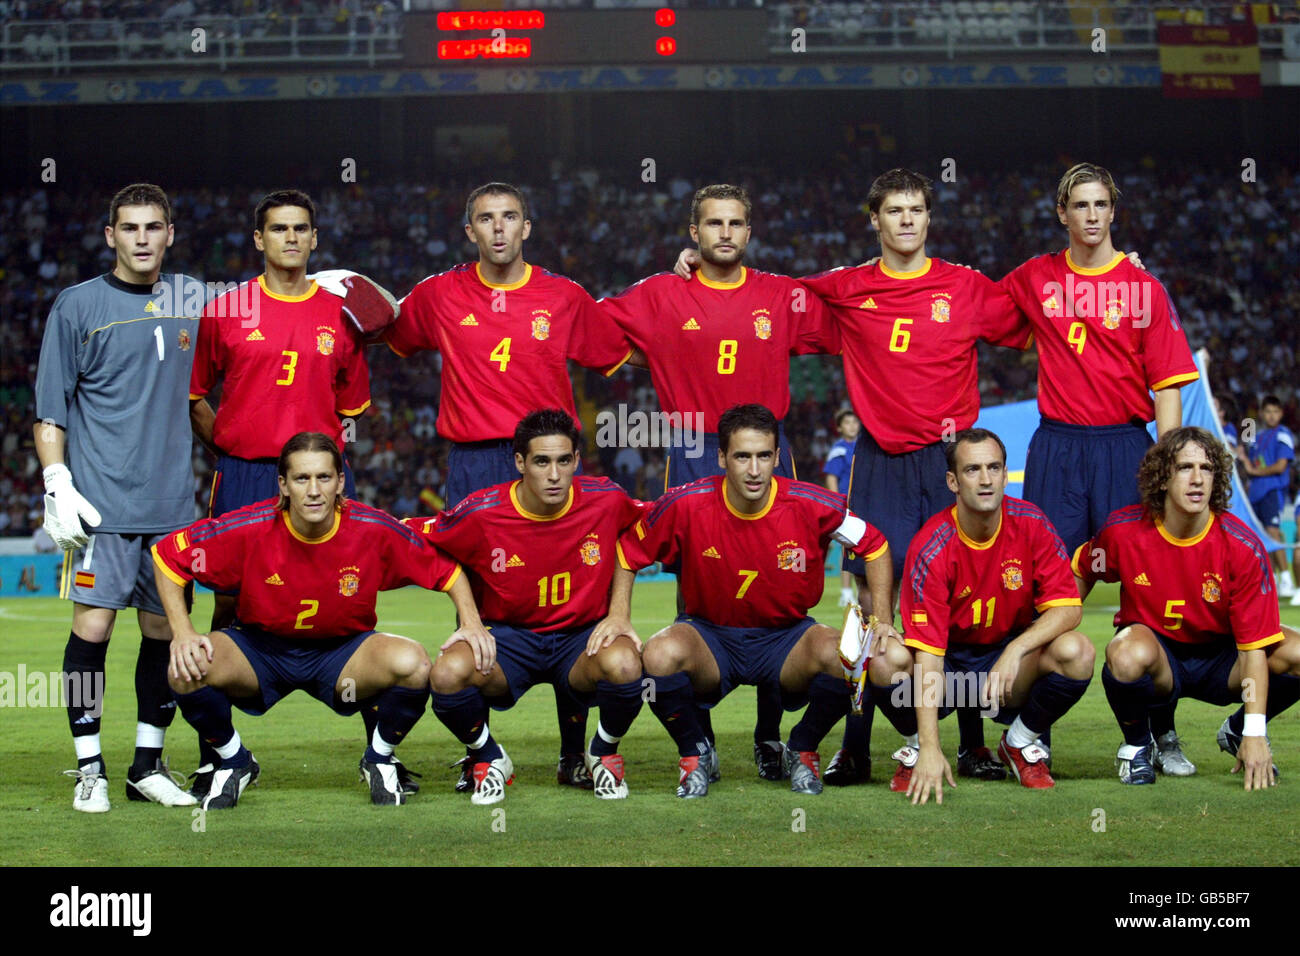 Fußball - Europameisterschaft 2004 Qualifikation - Gruppe sechs - Spanien  gegen Ukraine. Spanische Teamgruppe Stockfotografie - Alamy